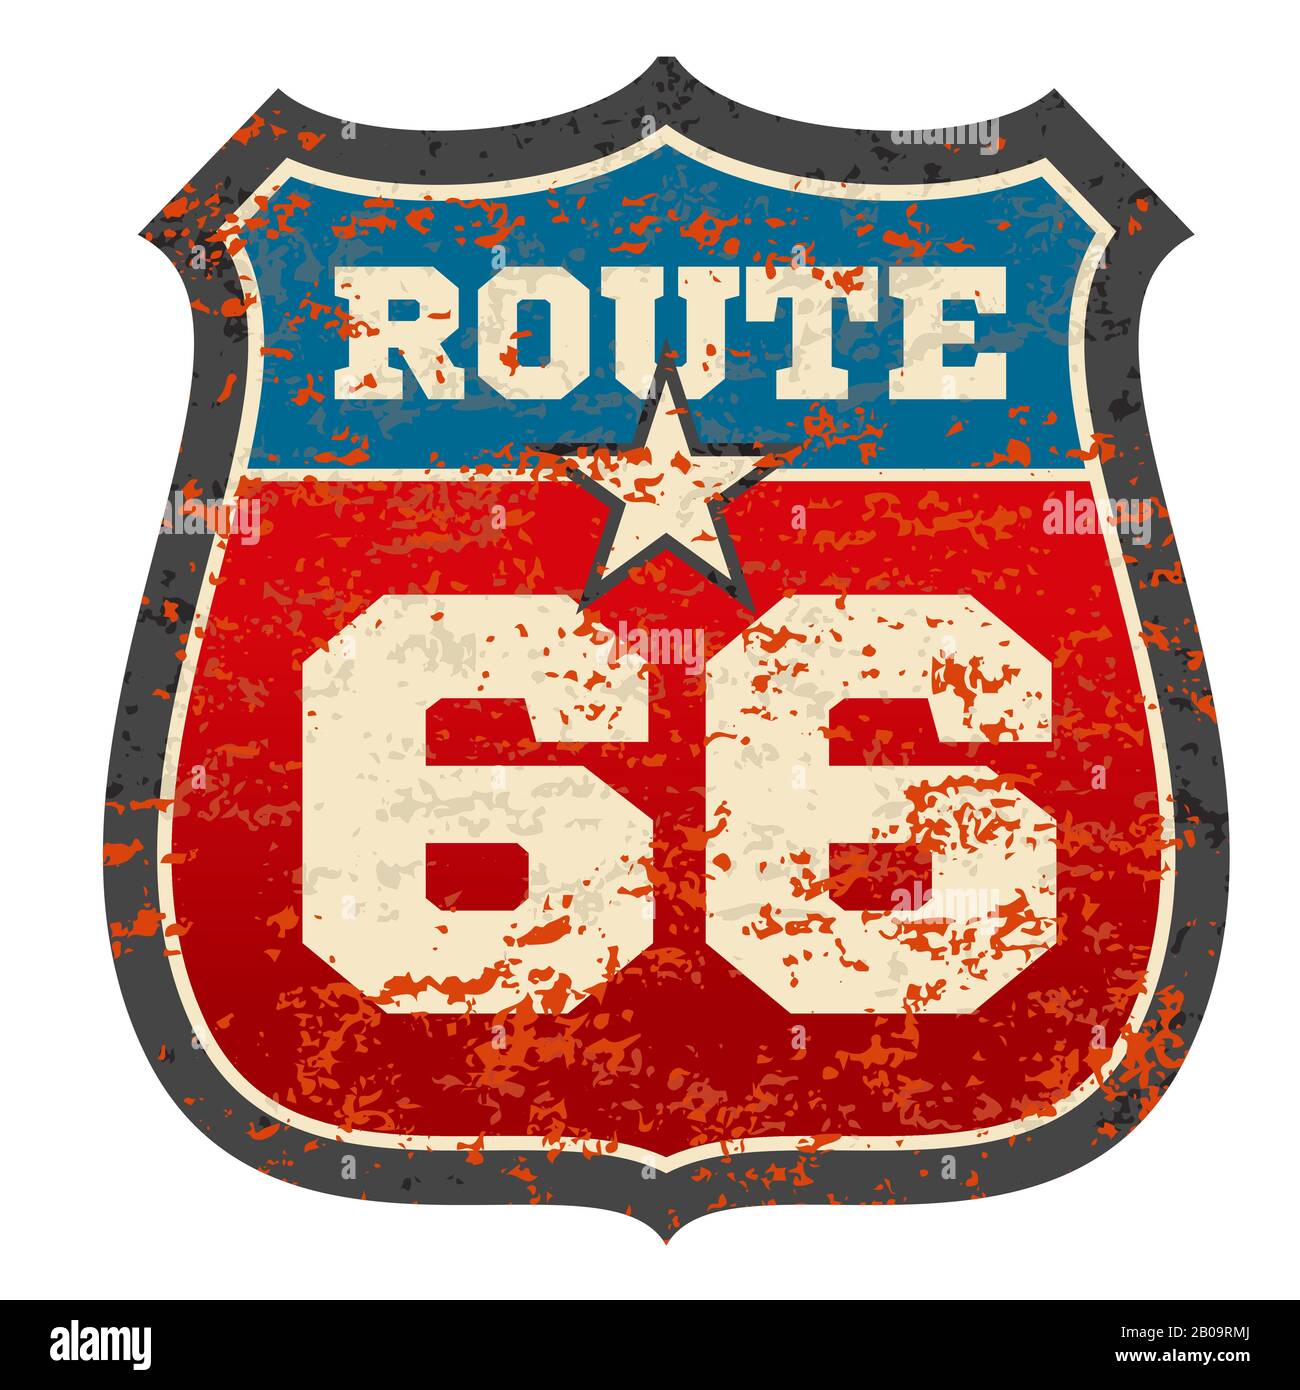 Vintage Route 66 Straßenschild mit Grunge verstresst verrosteter Textur Vektor-Illustration. Verkehrsschild Route 66, Wegweiser Stock Vektor